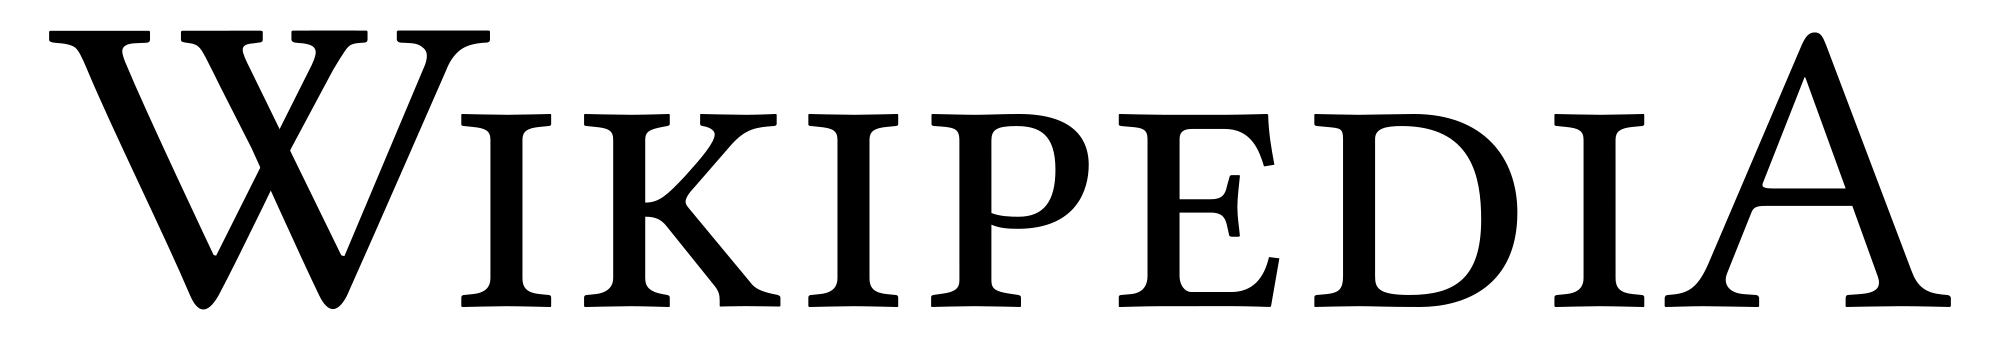 wikipedia logo font #39117